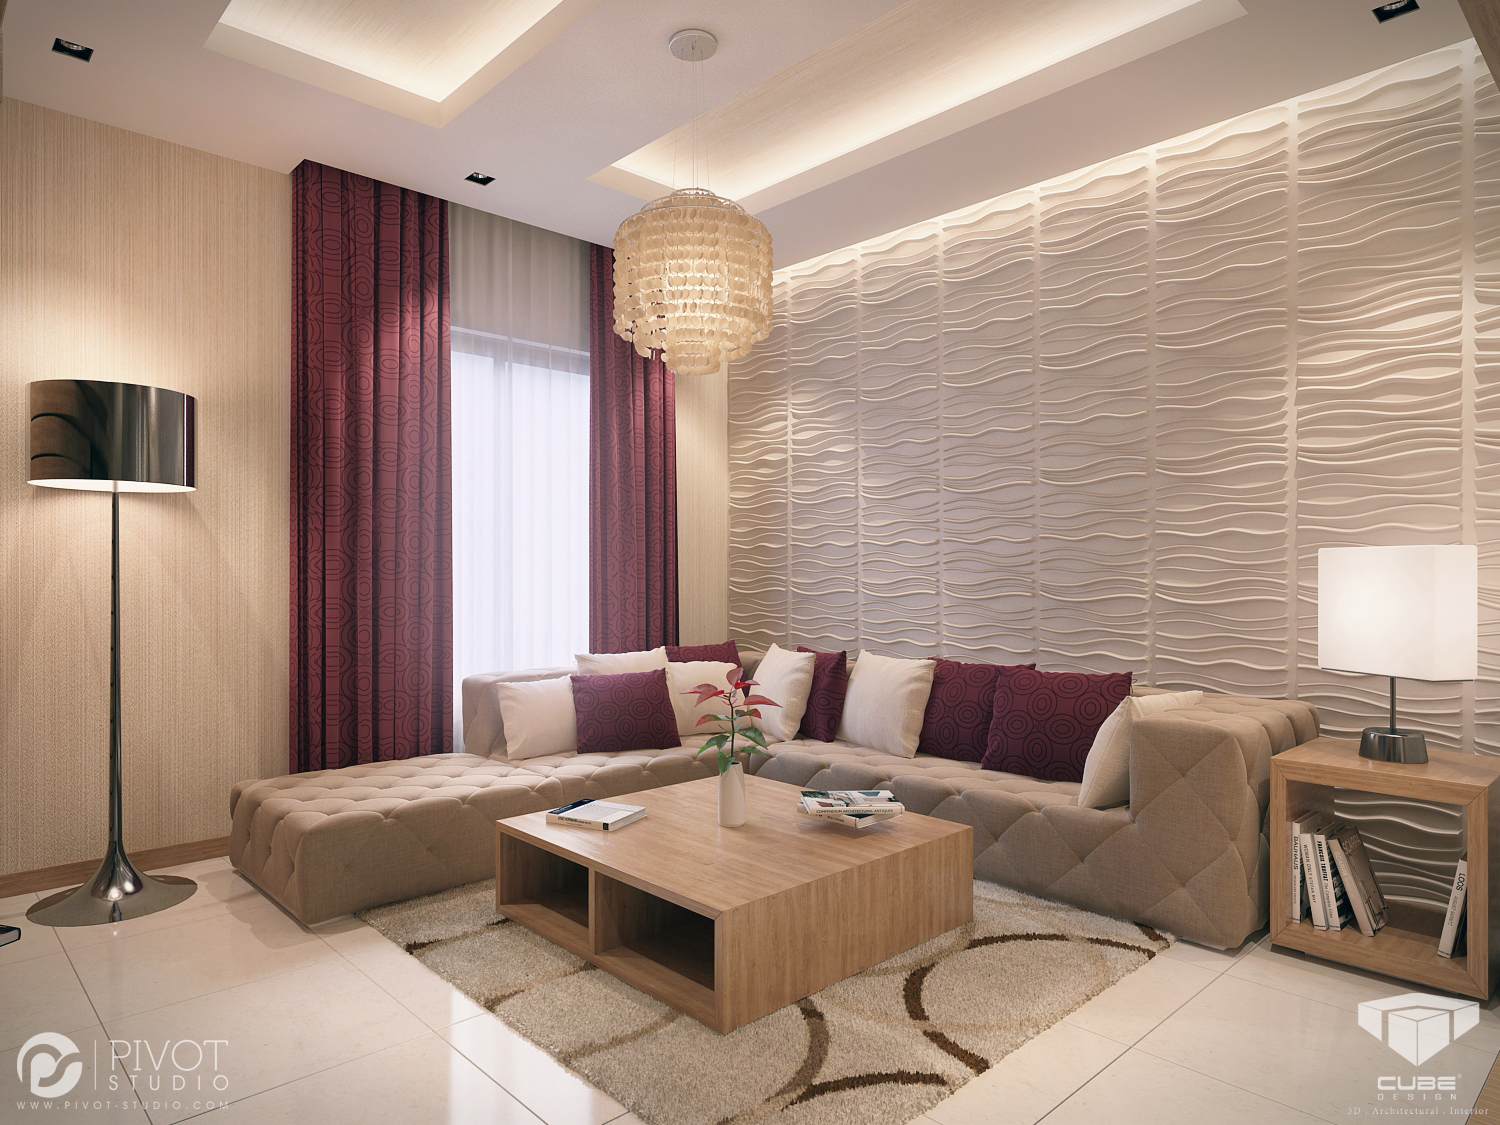 Cream burgundy living room Interior Design Ideas